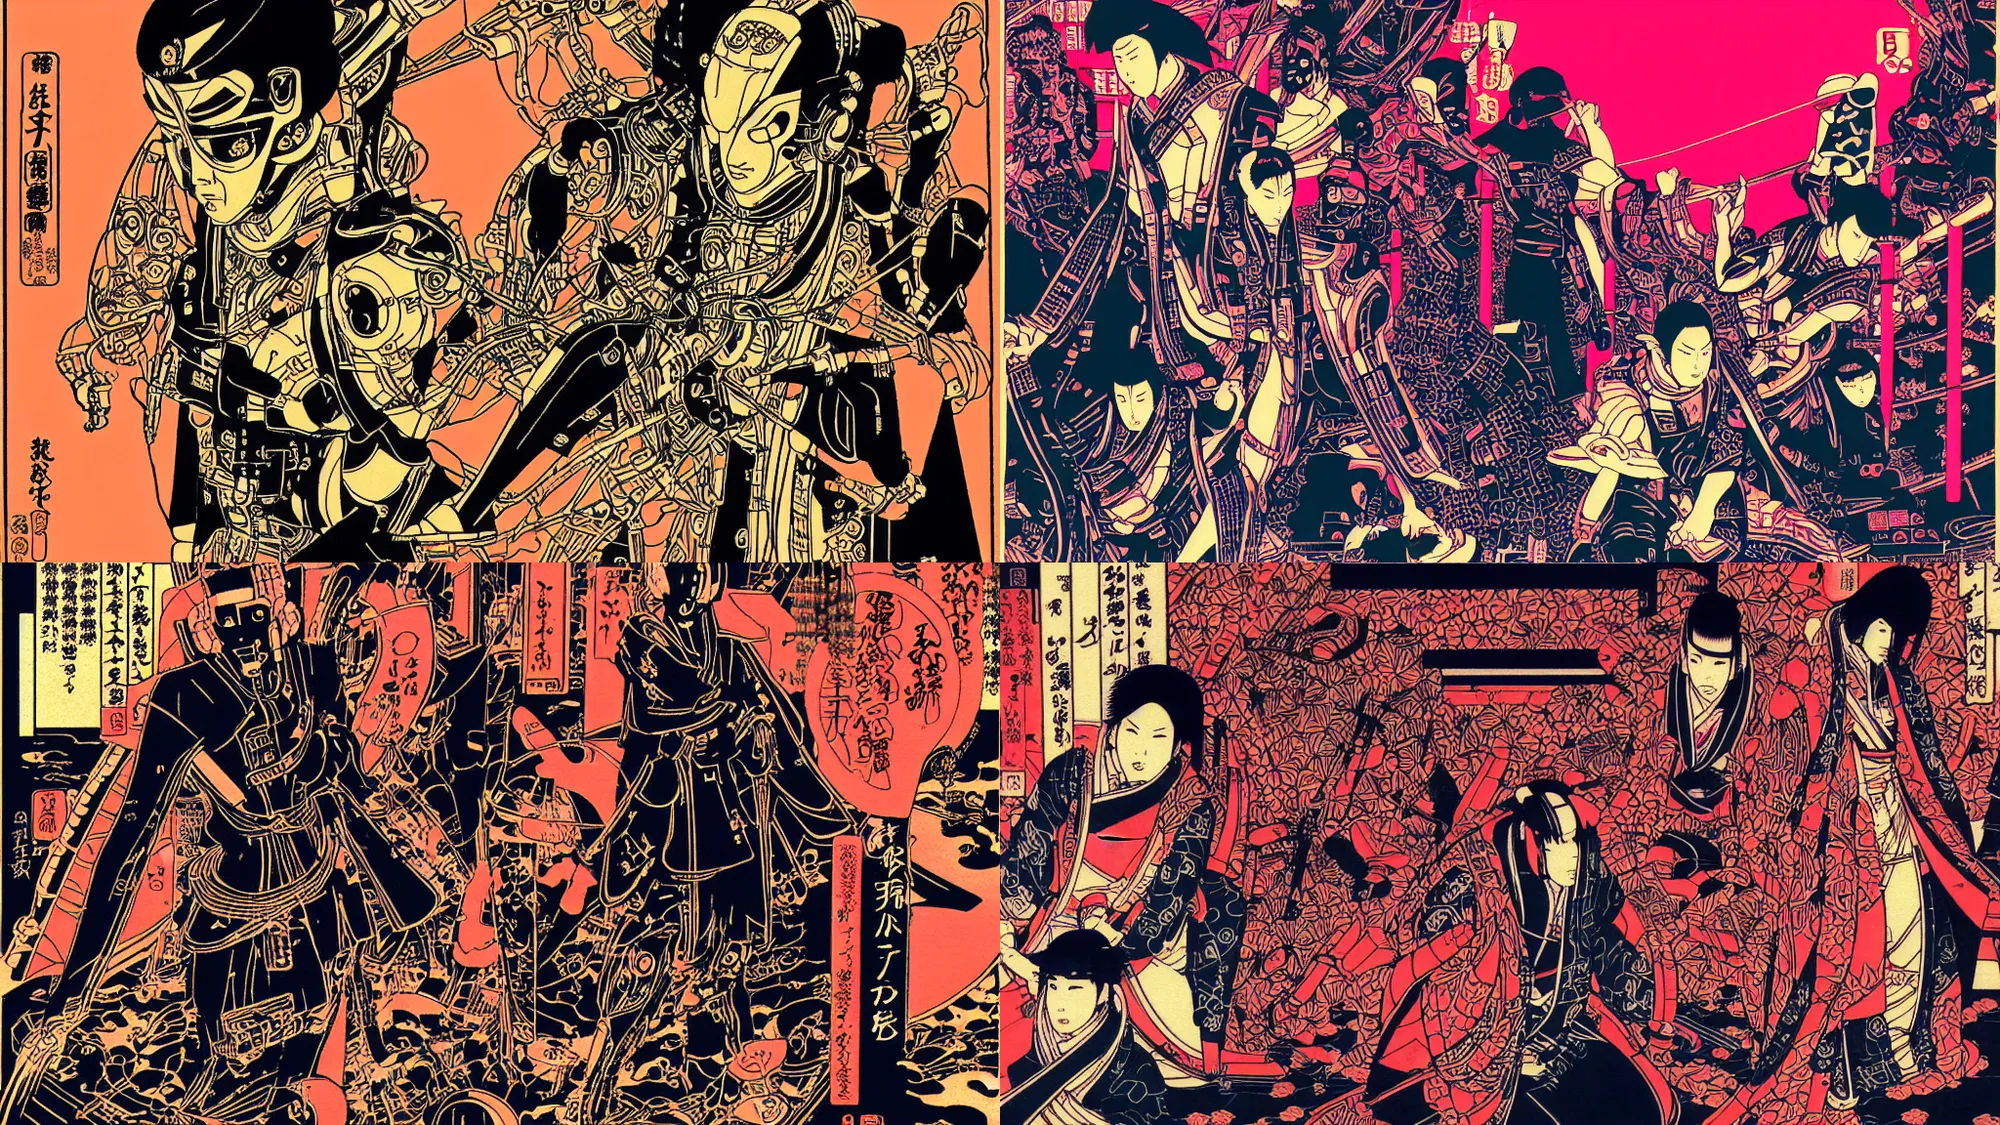 Prompt: futuristic japanese cyberpunk silk screen by utagawa yoshiiku, ohara koson, pixiv contest winner, cyberpunk style, cyberpunk color scheme, japanpunk